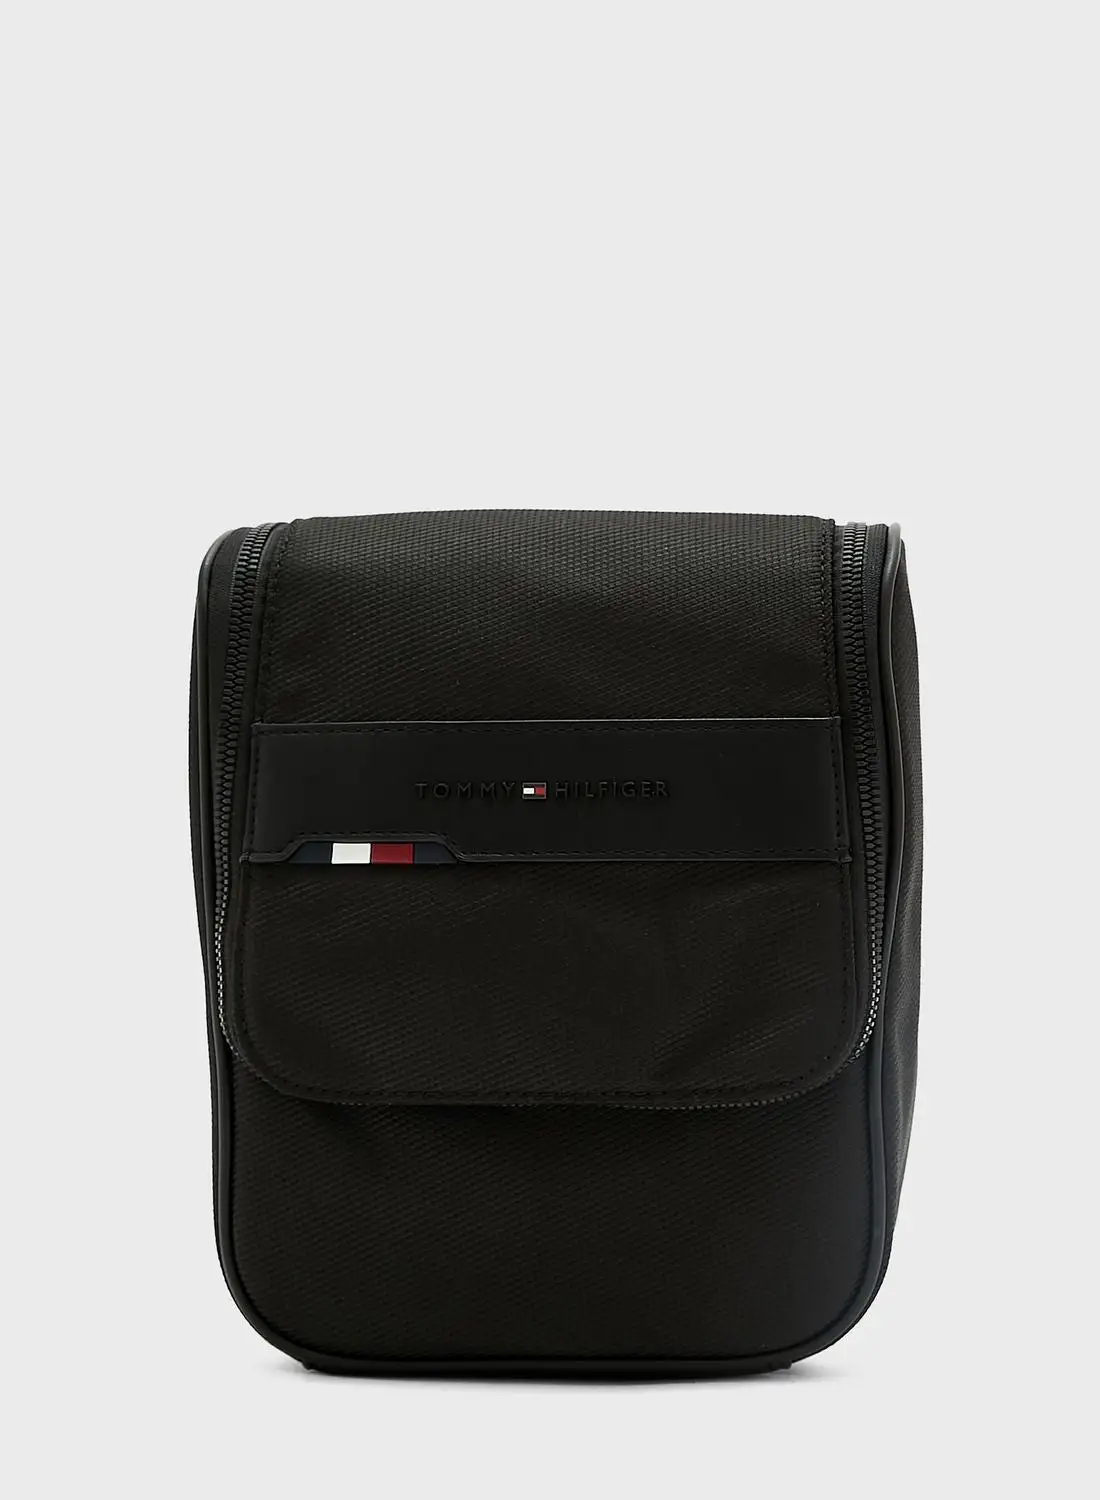 حقيبة أدوات الزينة بشعار تومي جينز